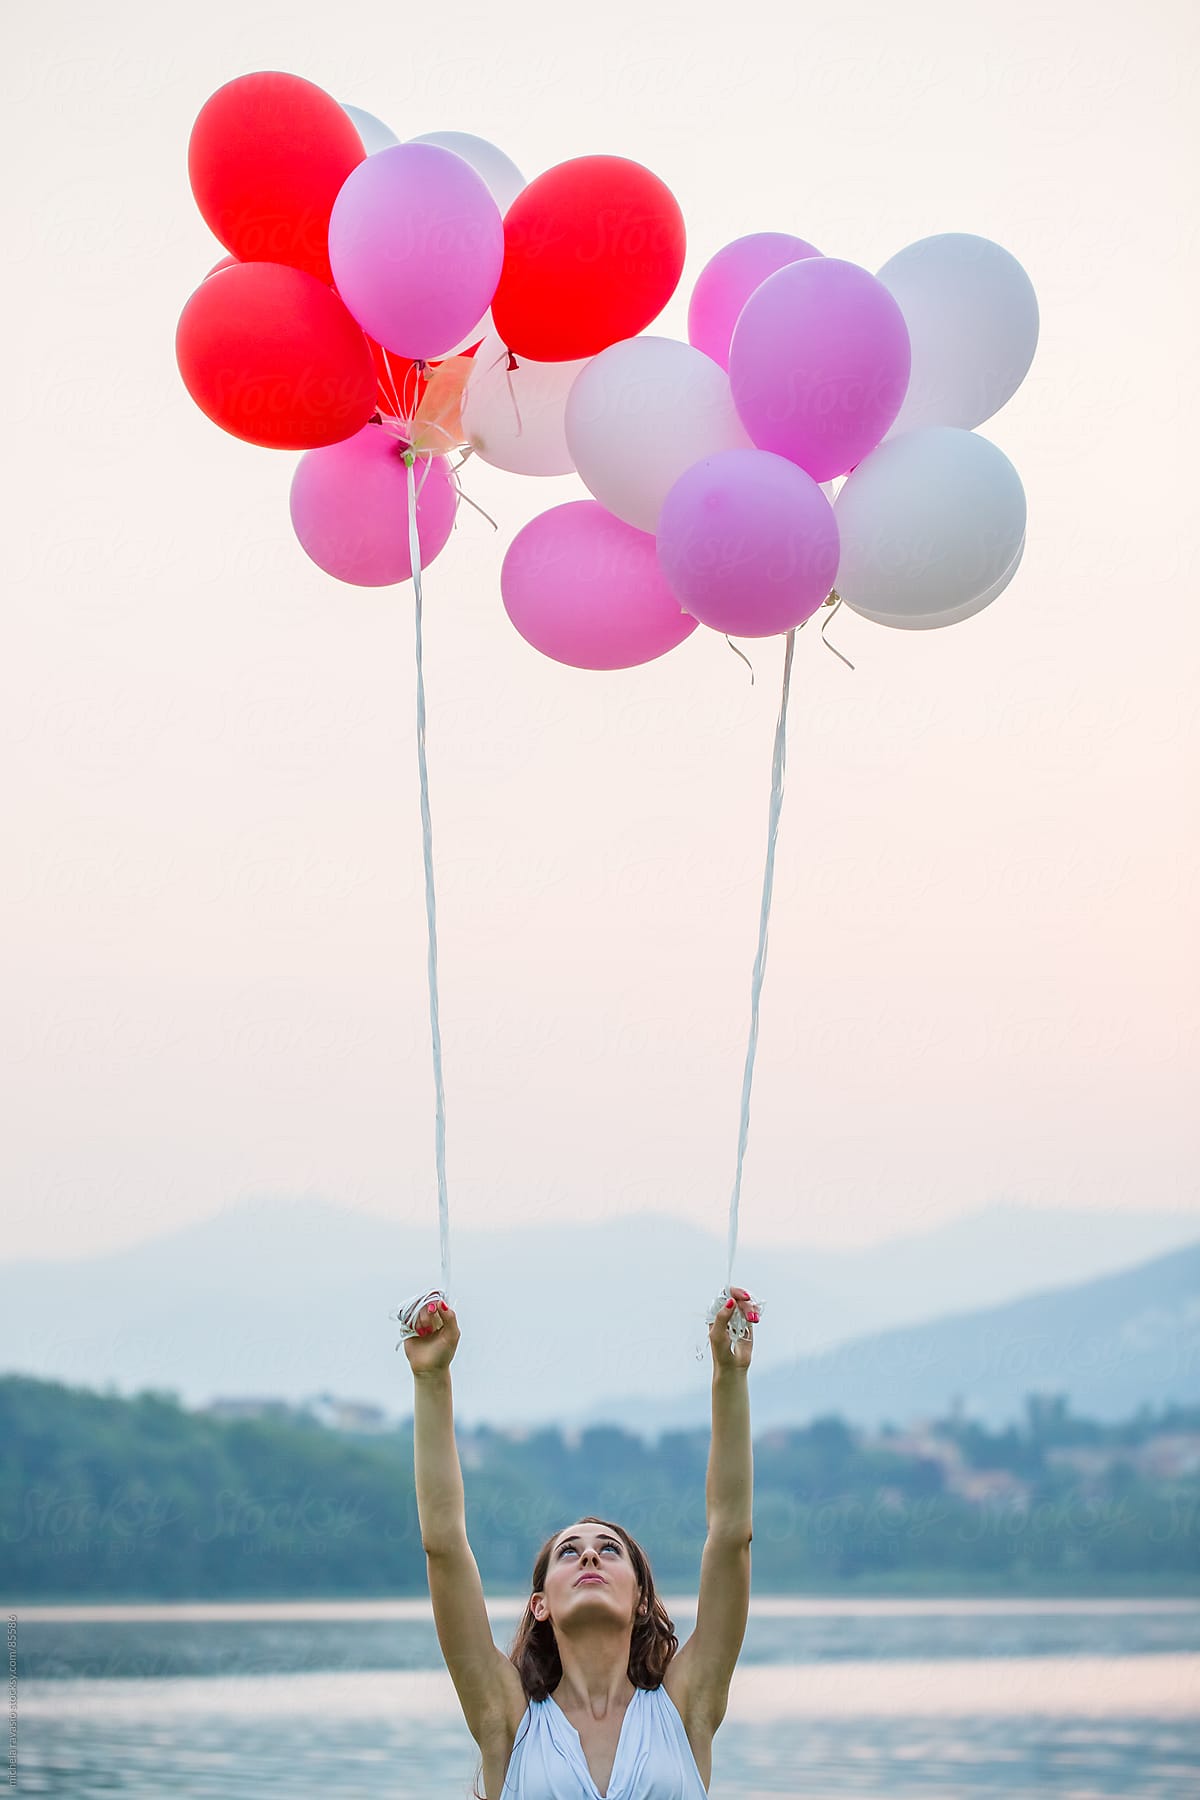 Young Woman With Balloons Del Colaborador De Stocksy Michela Ravasio Stocksy 